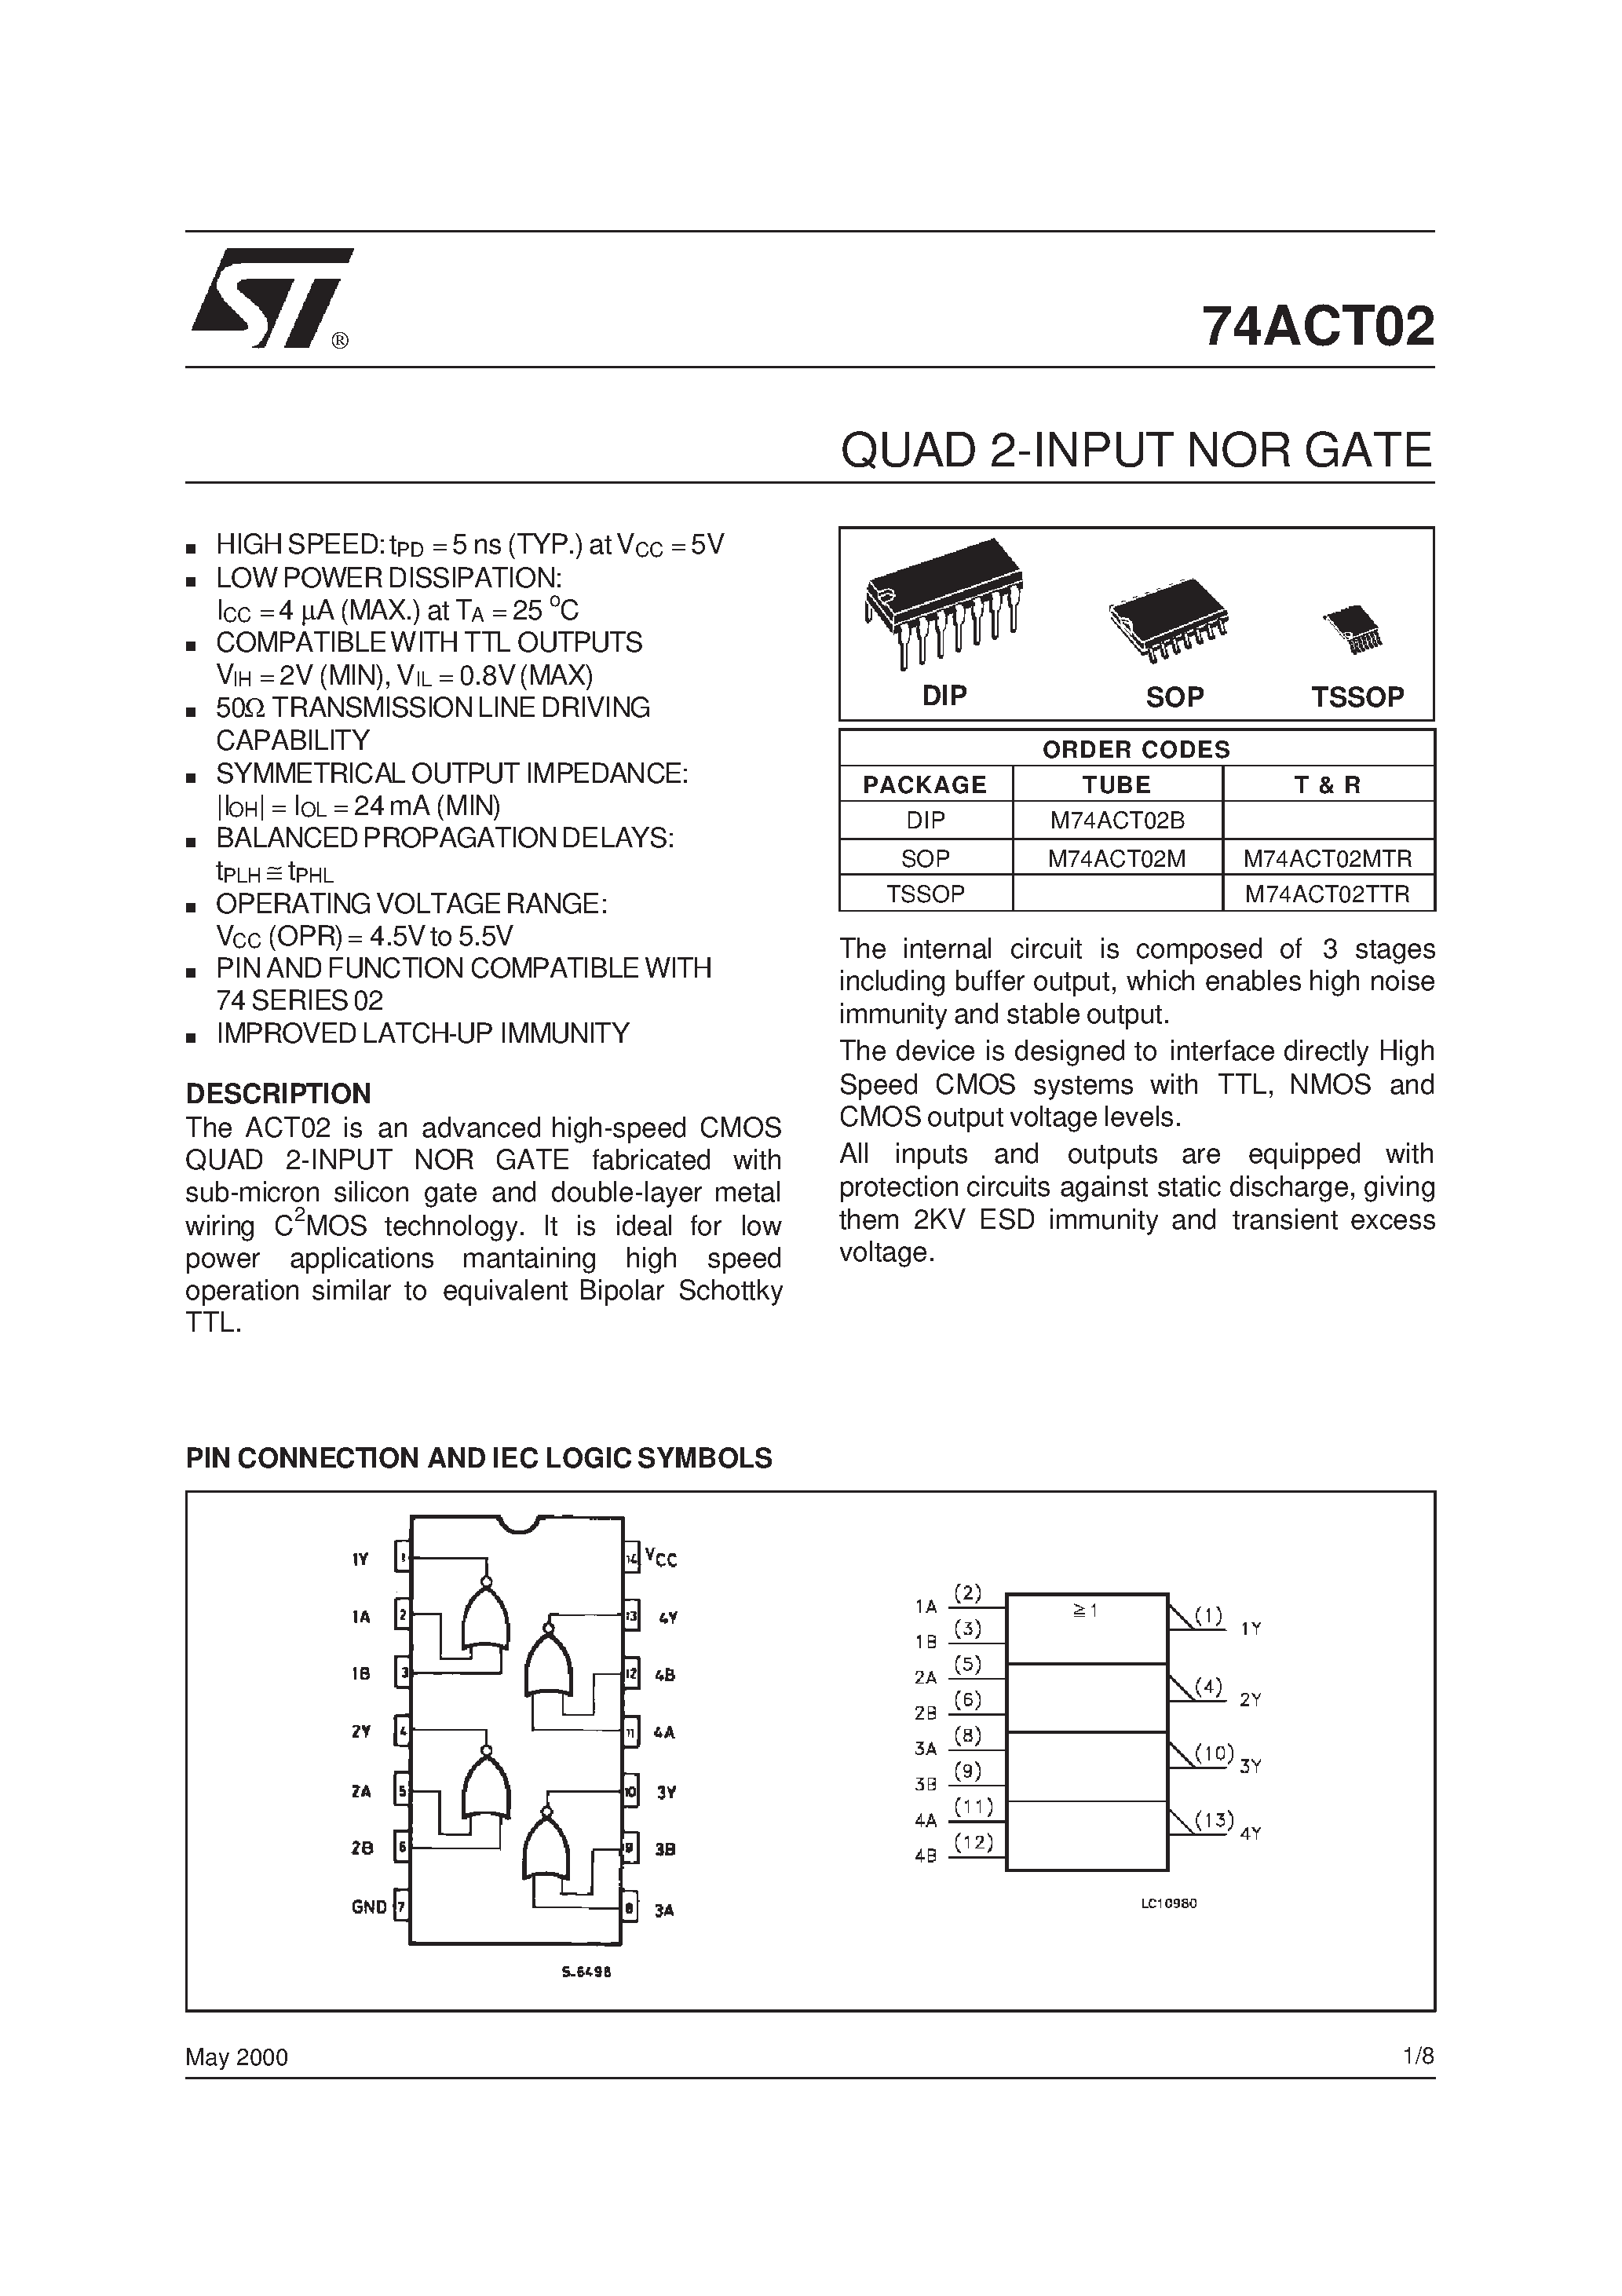 Даташит 74ACT02MTC - Quad 2-Input NOR Gate страница 1